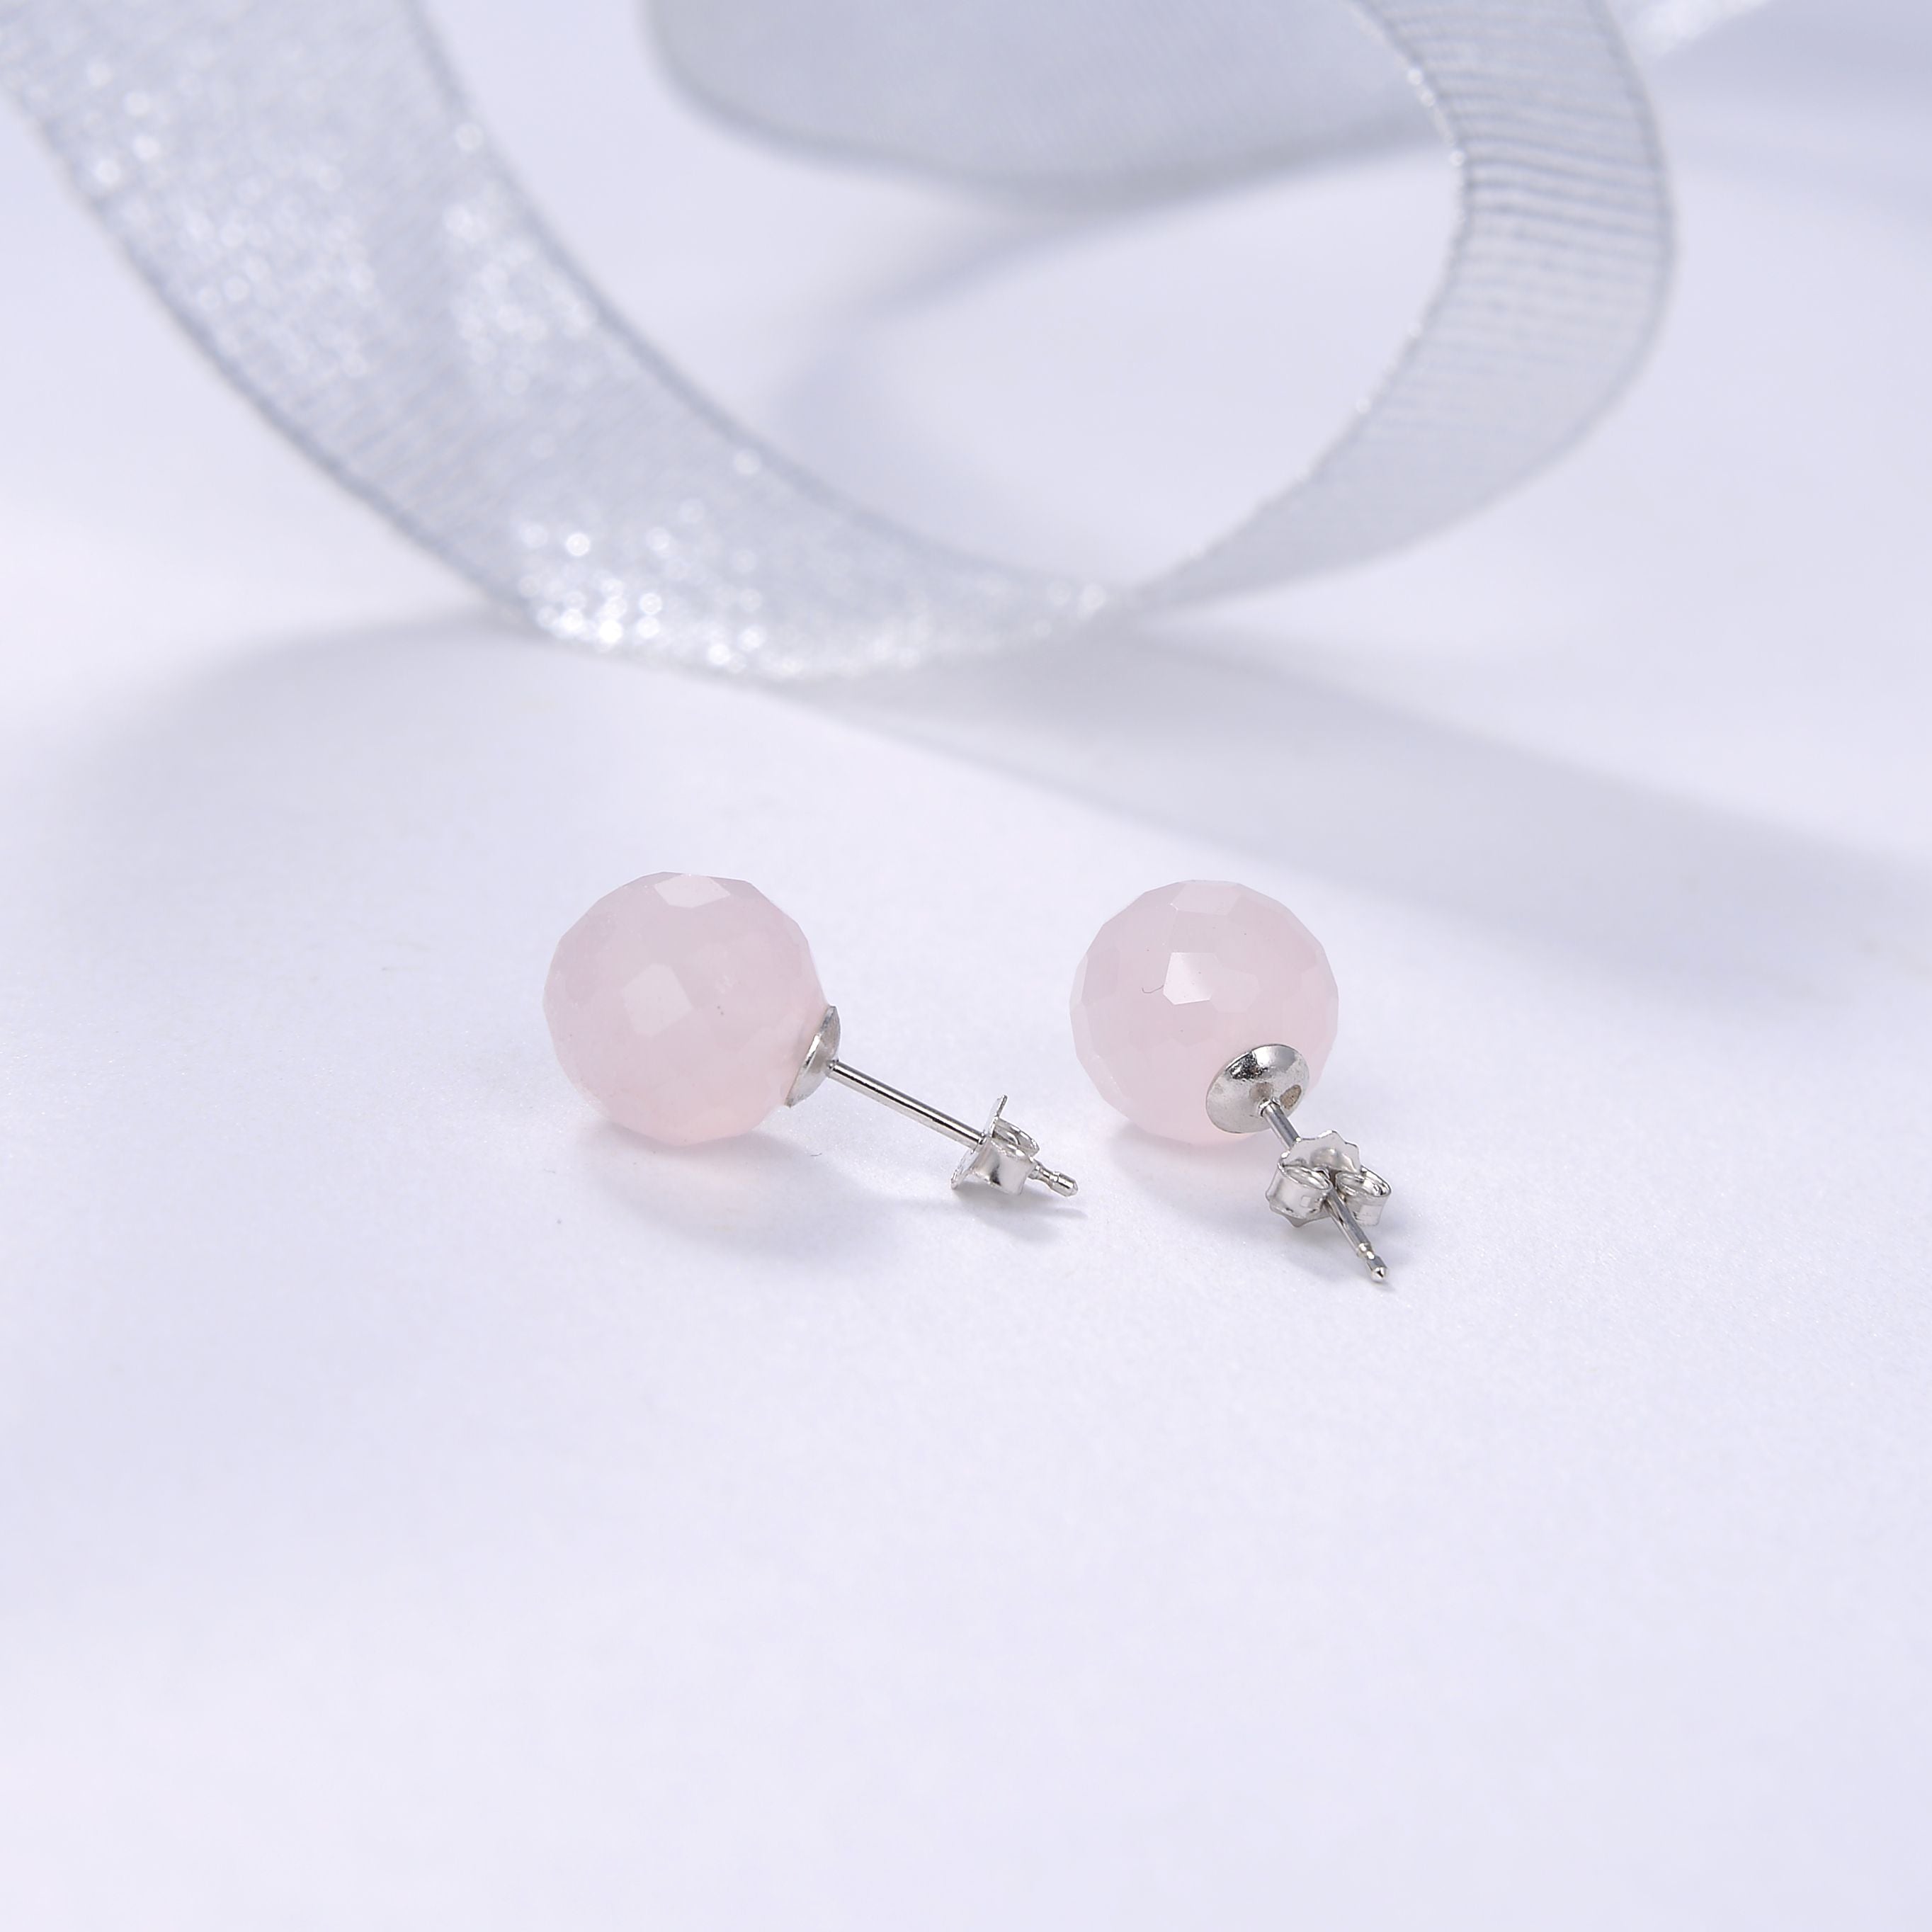 Beritafon 925 Sterling Silver Rose Quartz Gemstones Stud Earring for Women or Girls